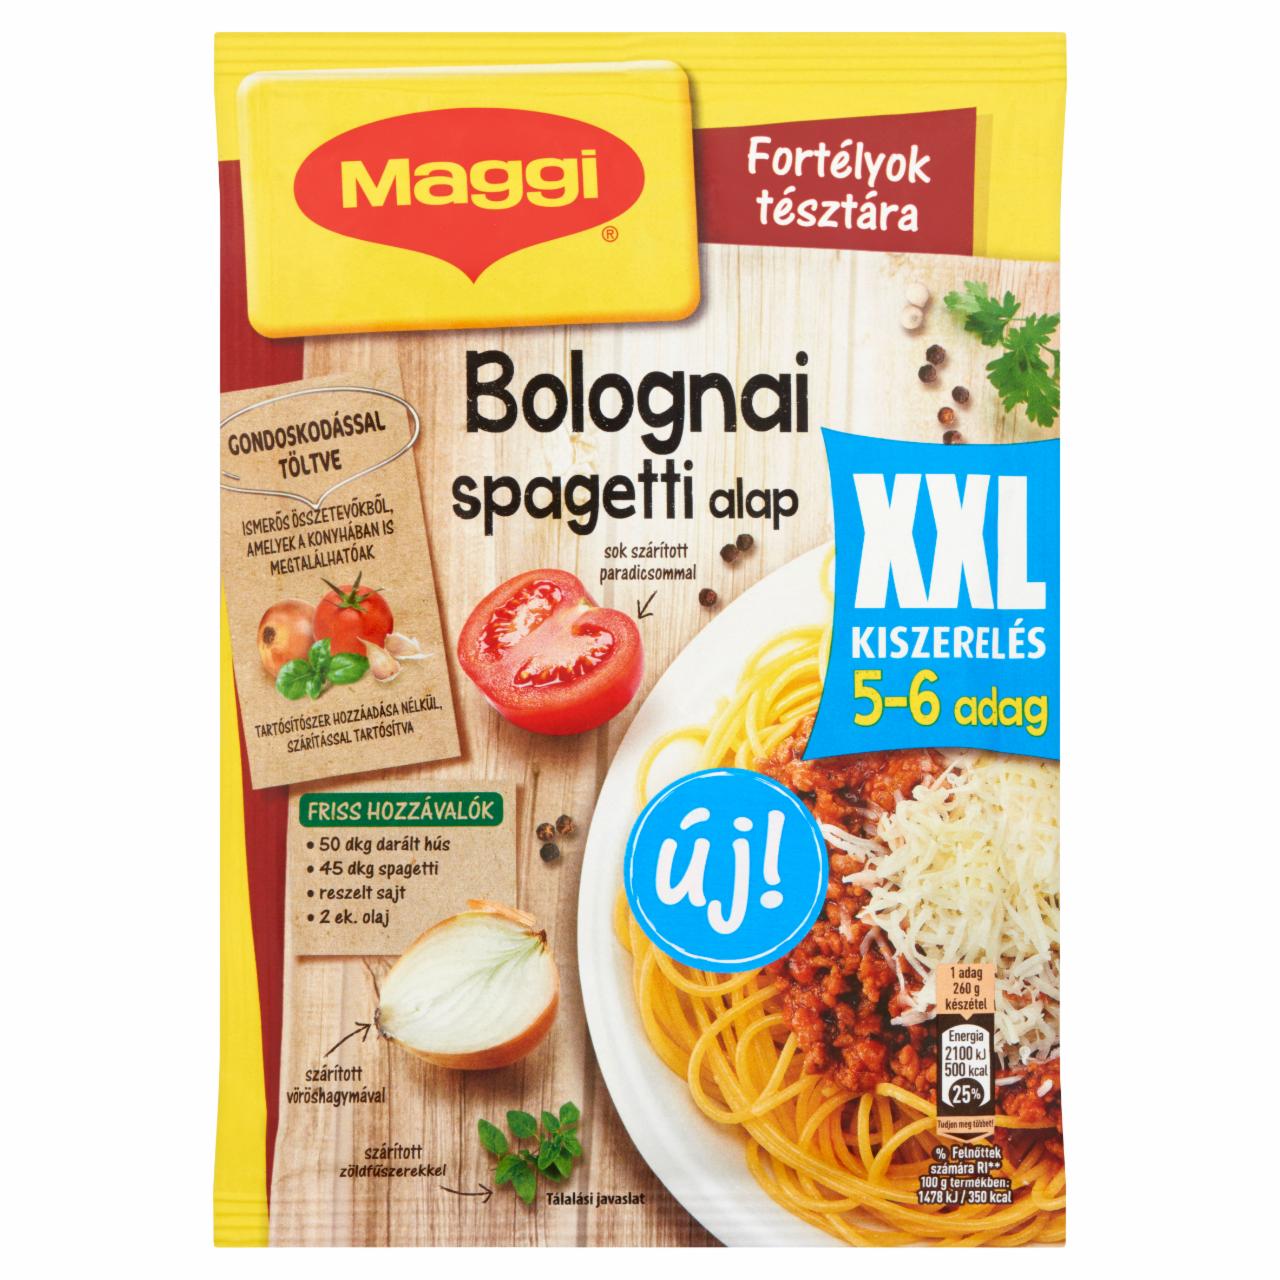 Képek - Maggi Fortélyok tésztára XXL Bolognai spagetti alap 60 g